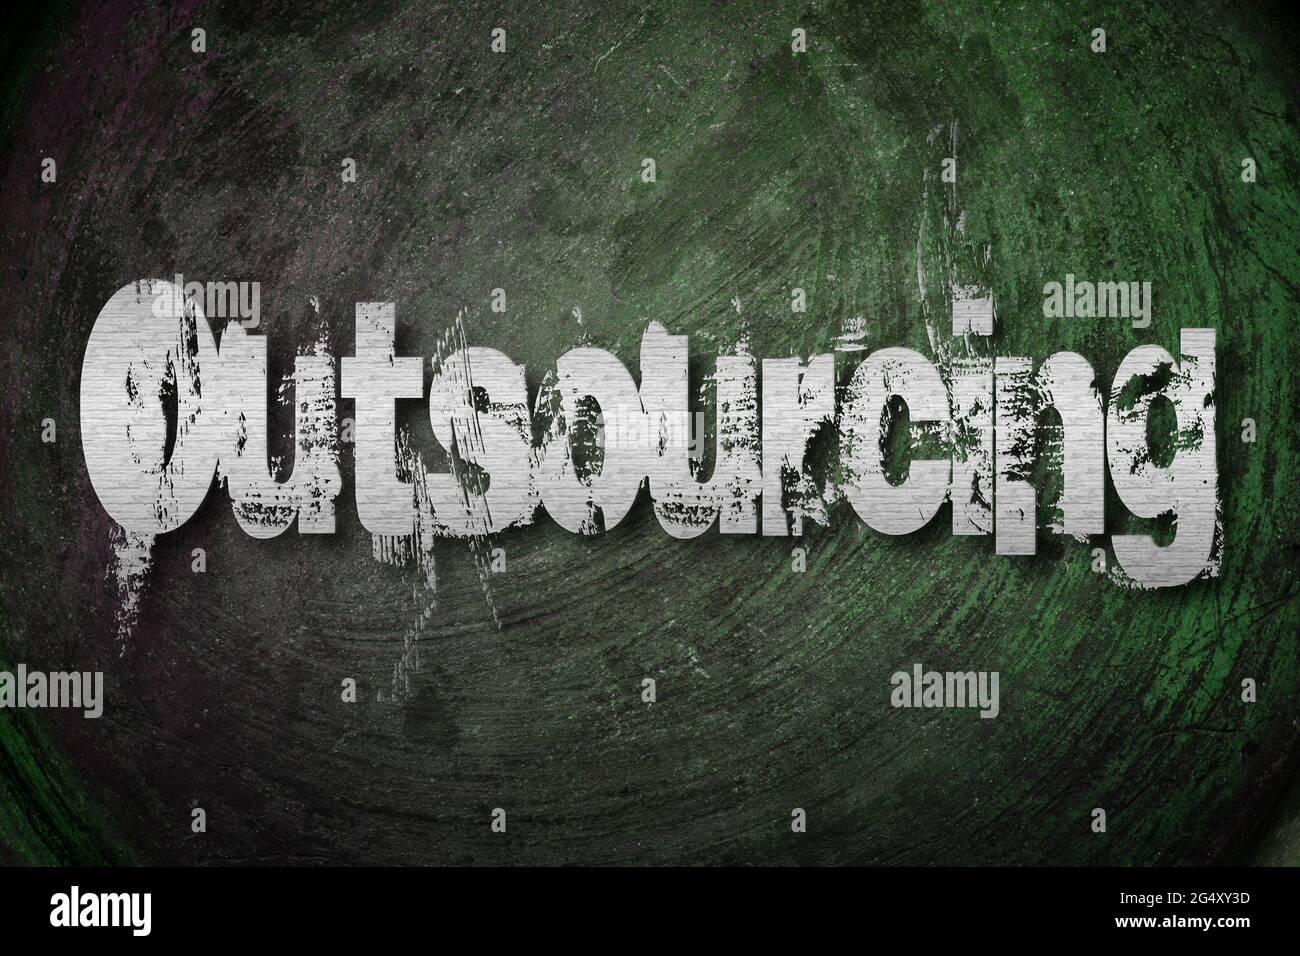 Outsourcing-Konzepttext im Hintergrund Stockfoto